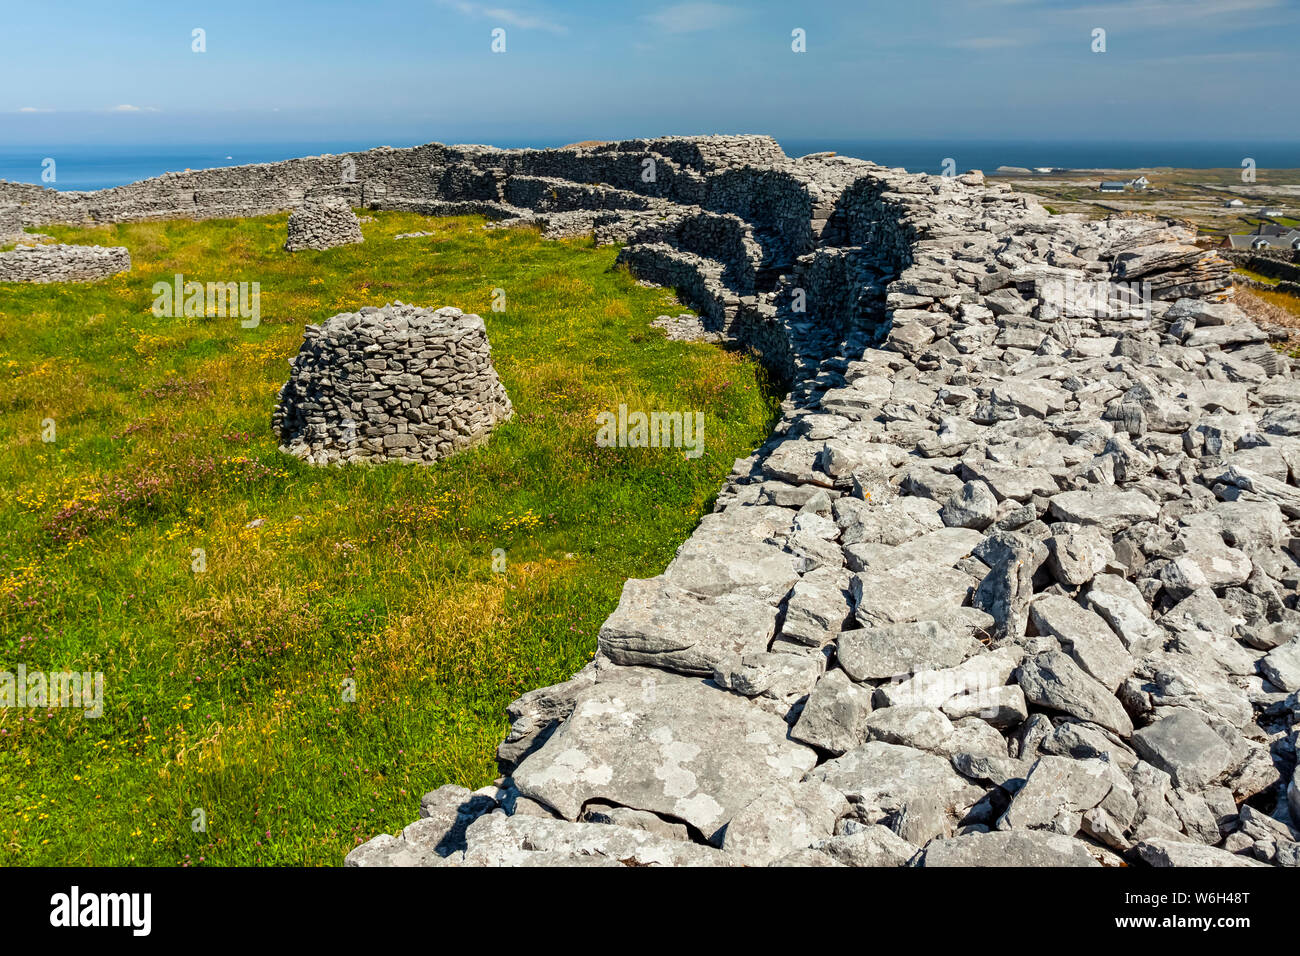 Mur en pierre et la pelouse avec des structures en pierre ronde, façon sauvage de l'Atlantique ; l'île de Estherville, comté de Galway, Irlande Banque D'Images